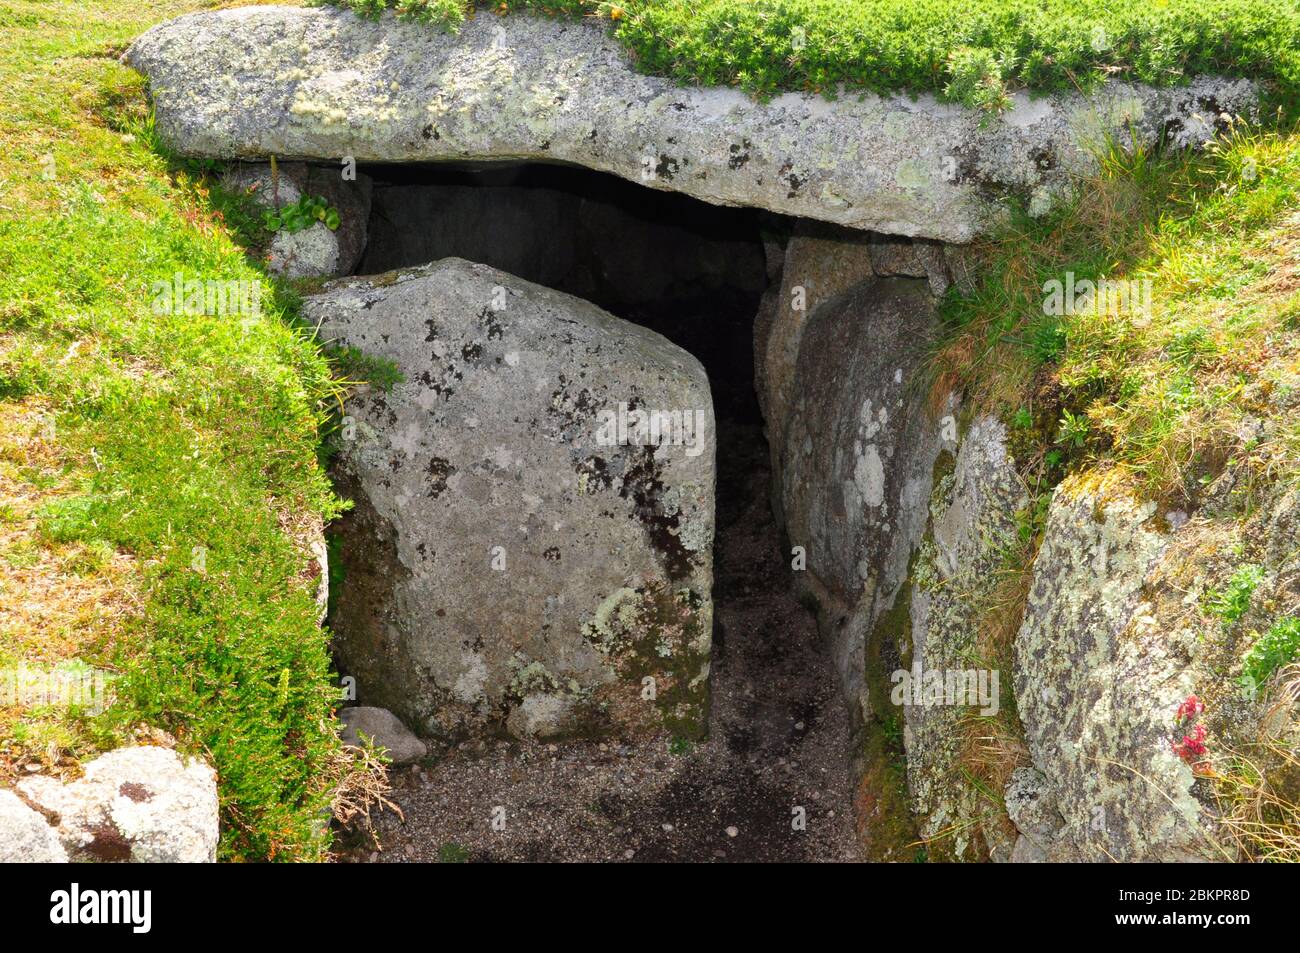 Ingresso parzialmente bloccato alla camera di sepoltura di Porth Hellick, tomba di ingresso scilloniano, tardo neolitico o età del Bronzo precoce. Circa 2500BC. St Marys, Foto Stock